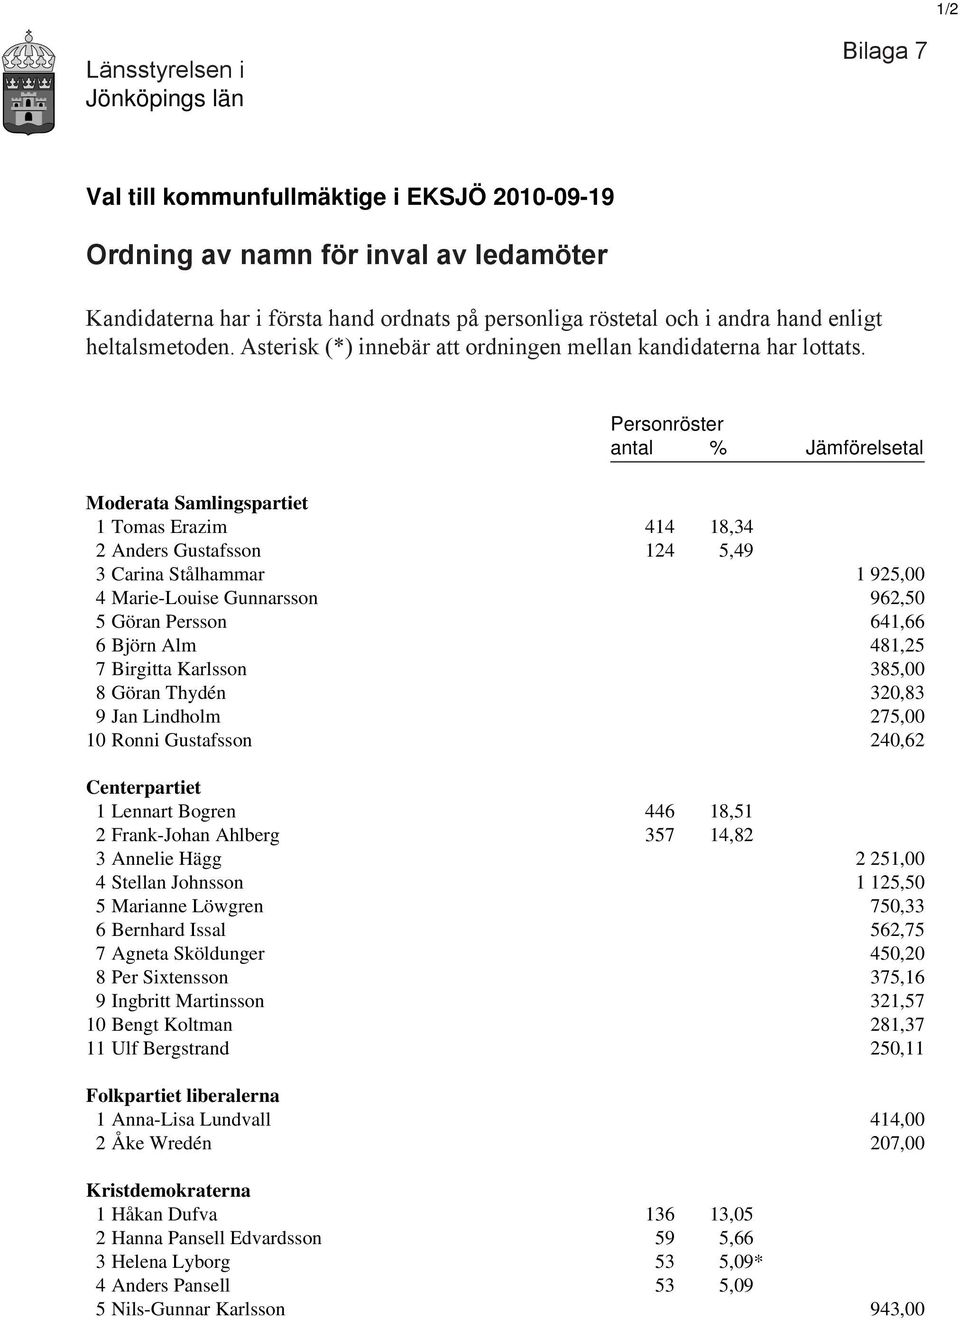 Personröster antal % Jämförelsetal Moderata Samlingspartiet 1 Tomas Erazim 414 18,34 2 Anders Gustafsson 124 5,49 3 Carina Stålhammar 1 925,00 4 Marie-Louise Gunnarsson 962,50 5 Göran Persson 641,66